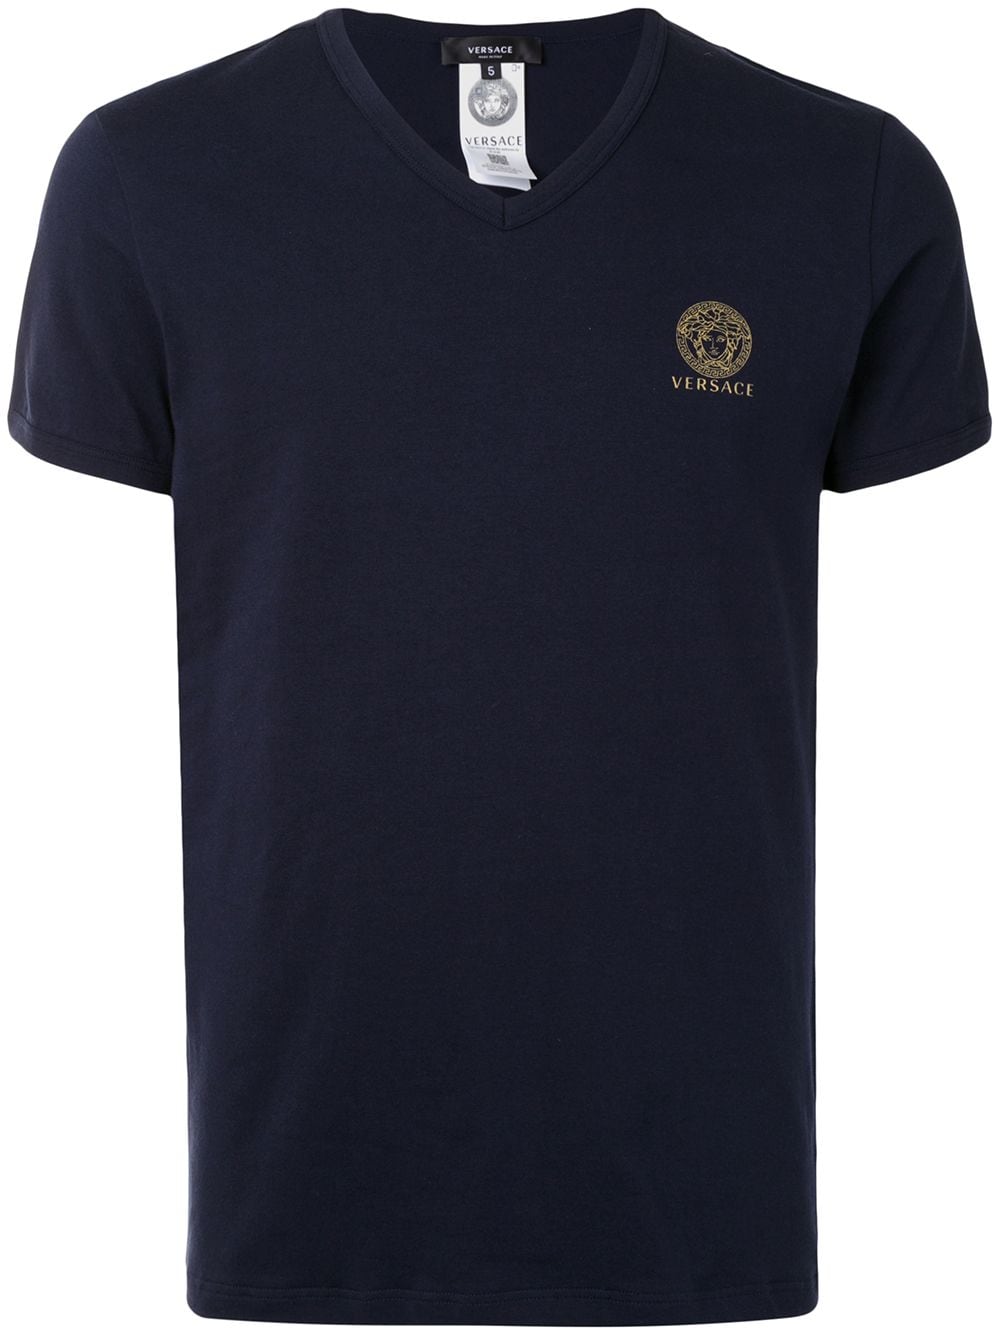 Versace Medusa logo T-shirt - Blue